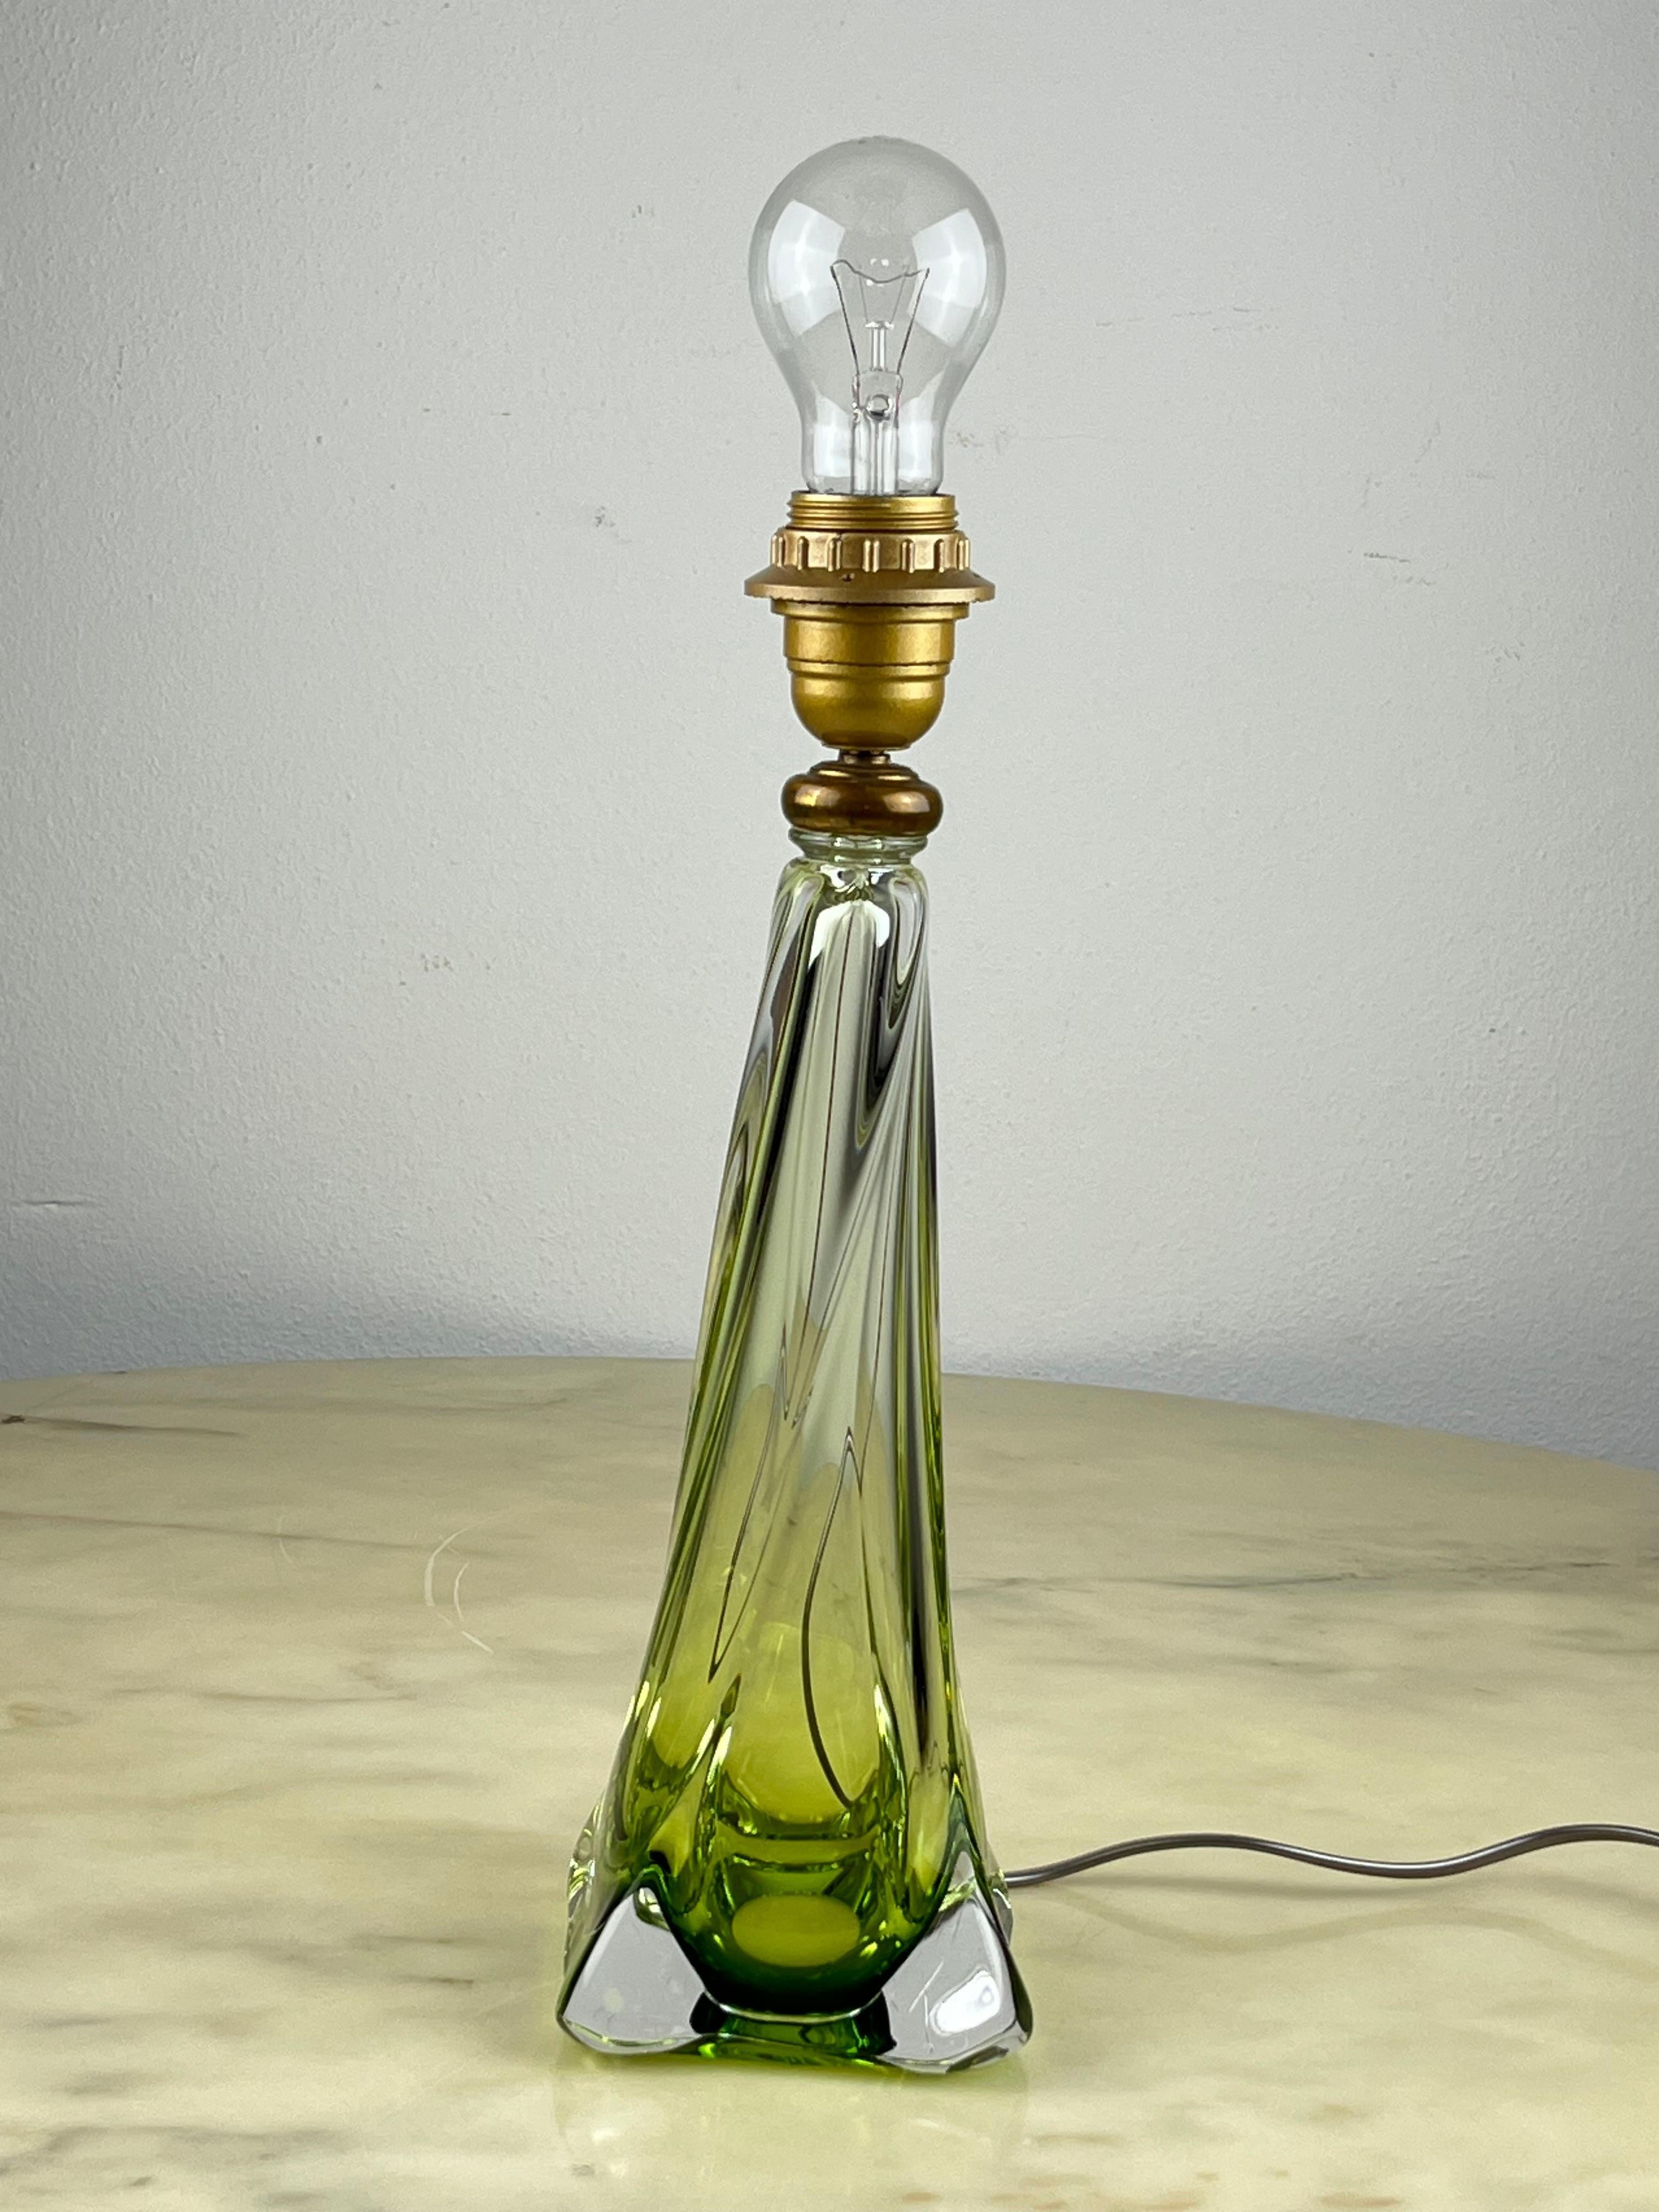 Lampe de table Val Saint Lambert, cristal de plomb, Belgique, années 1950.
Marque gravée sur le fond, comme sur la photo jointe à la description. Fabriqué par la plus grande cristallerie du Benelux, fournisseur de la famille royale belge.
Dimensions